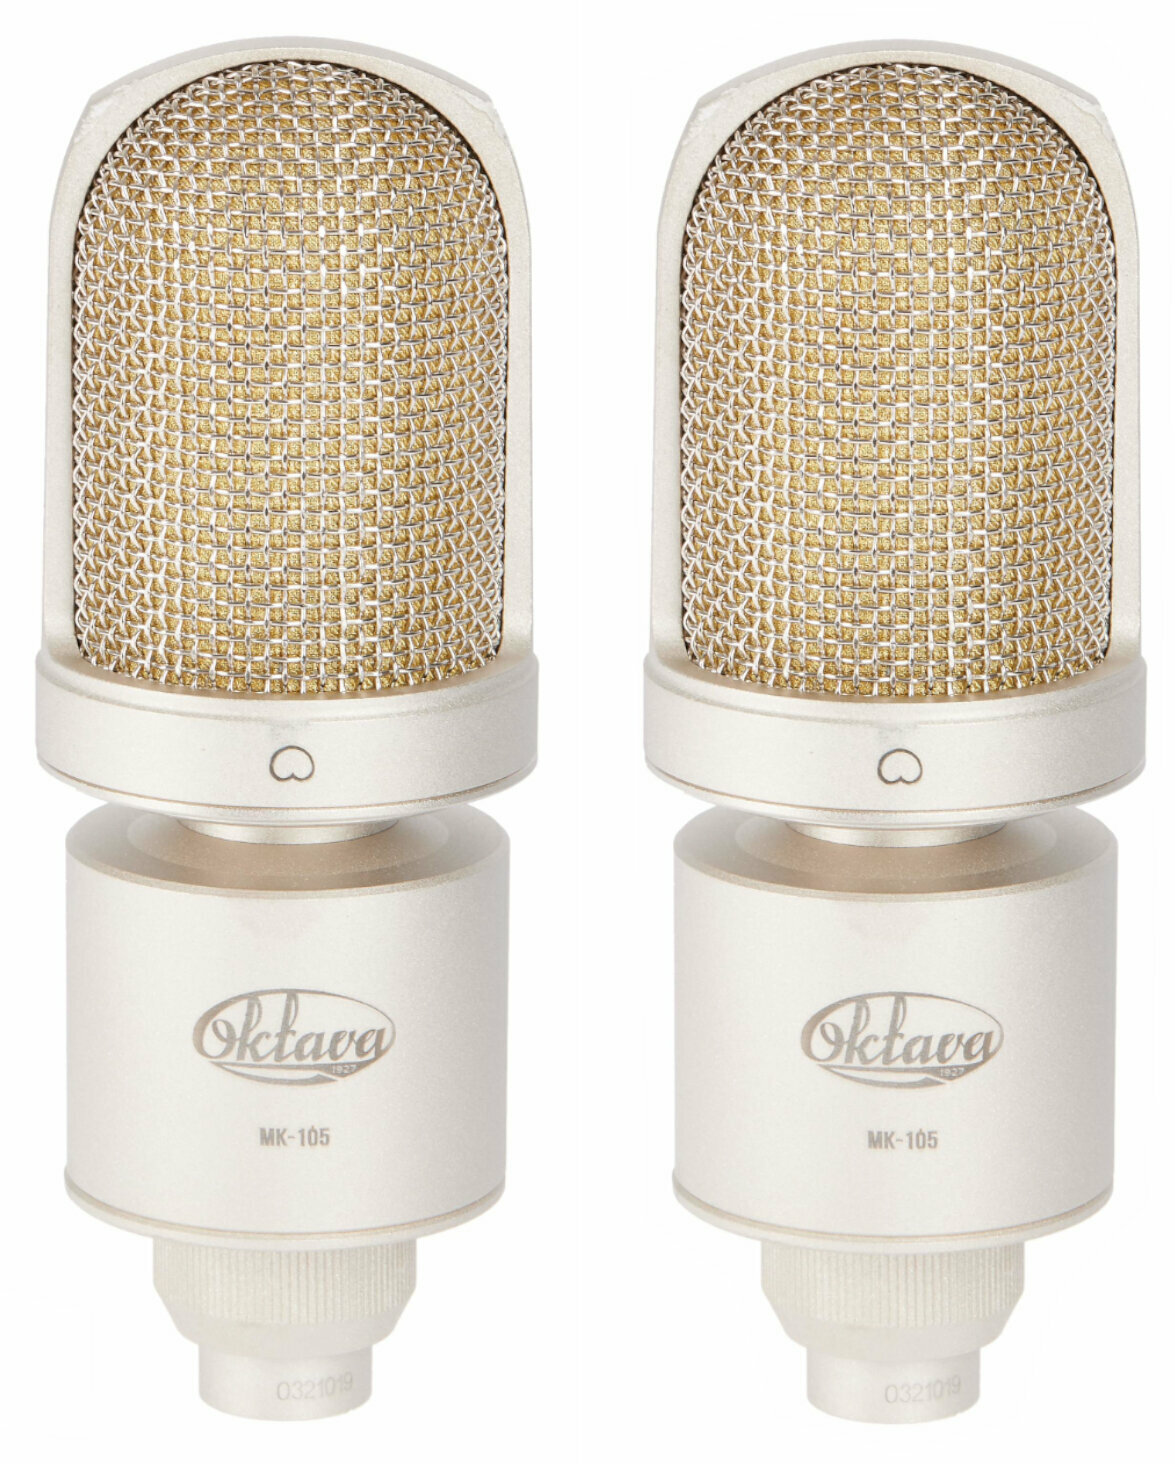 Kondenzátorový studiový mikrofon Oktava MK-105 stereo pair Kondenzátorový studiový mikrofon